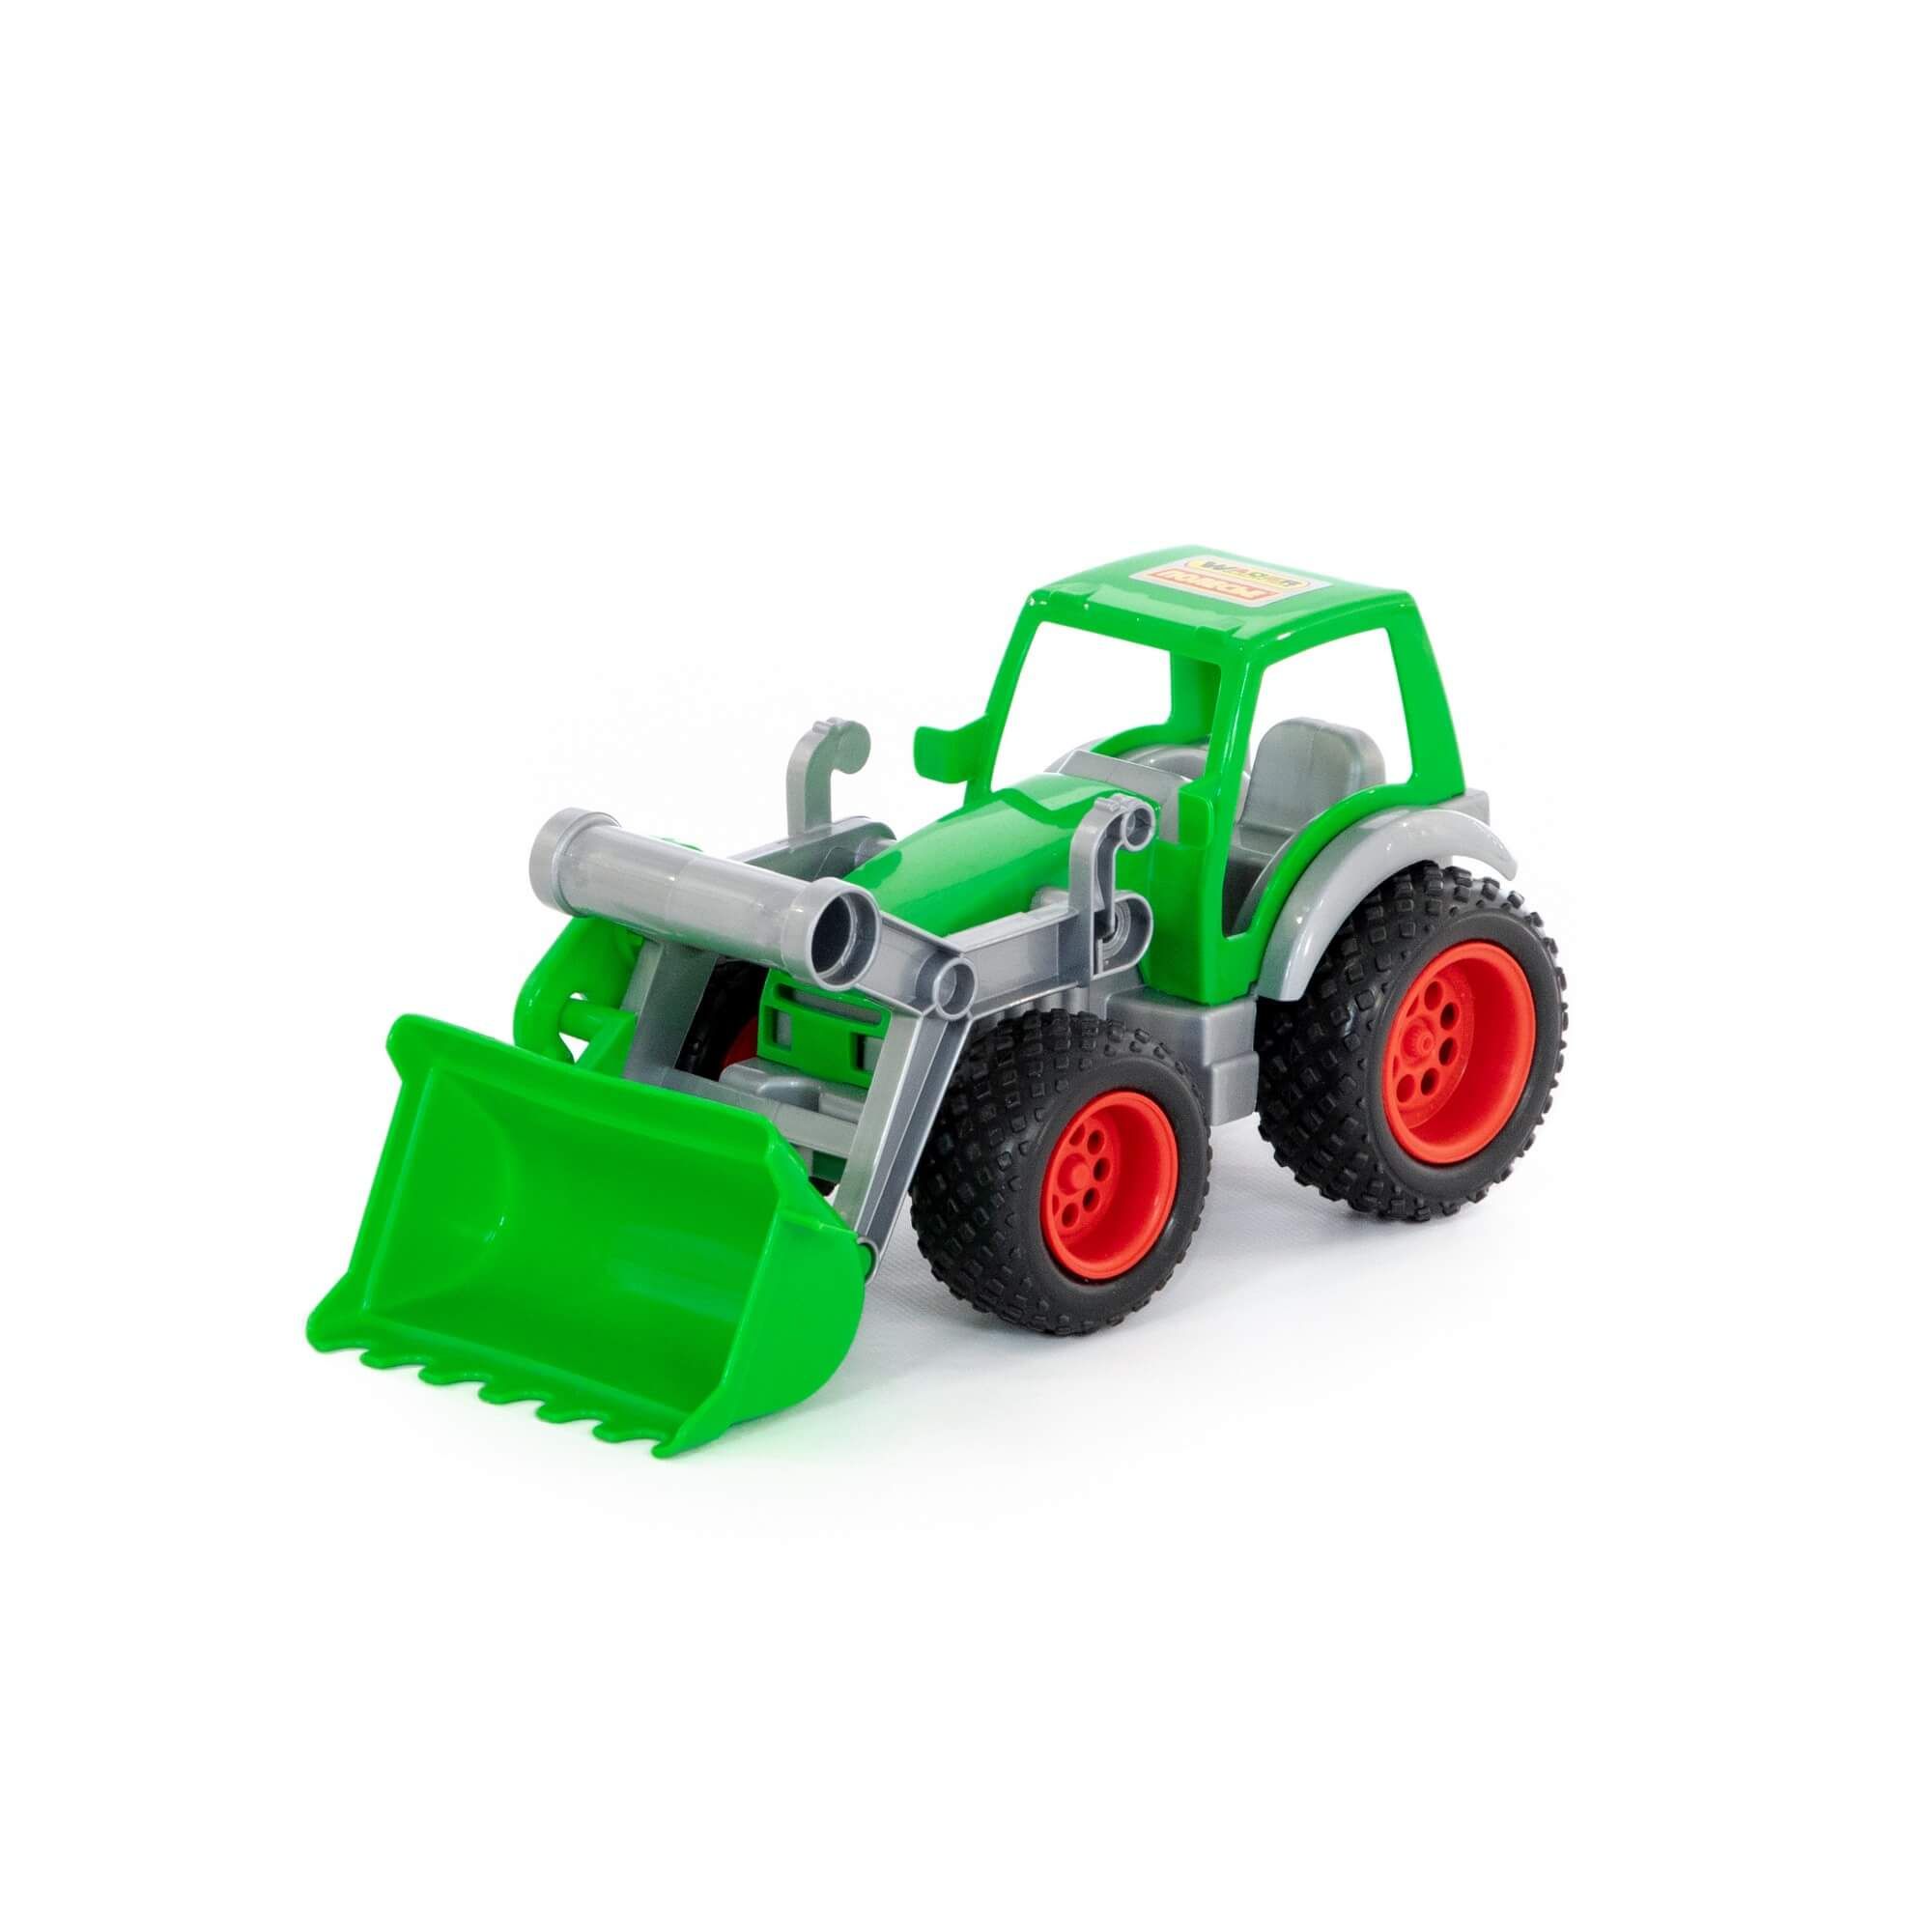 Трактор-погрузчик Фермер-техник (в сеточке) 8848 игрушка полесье 55736 трейлер майк и трактор погрузчик в коробке